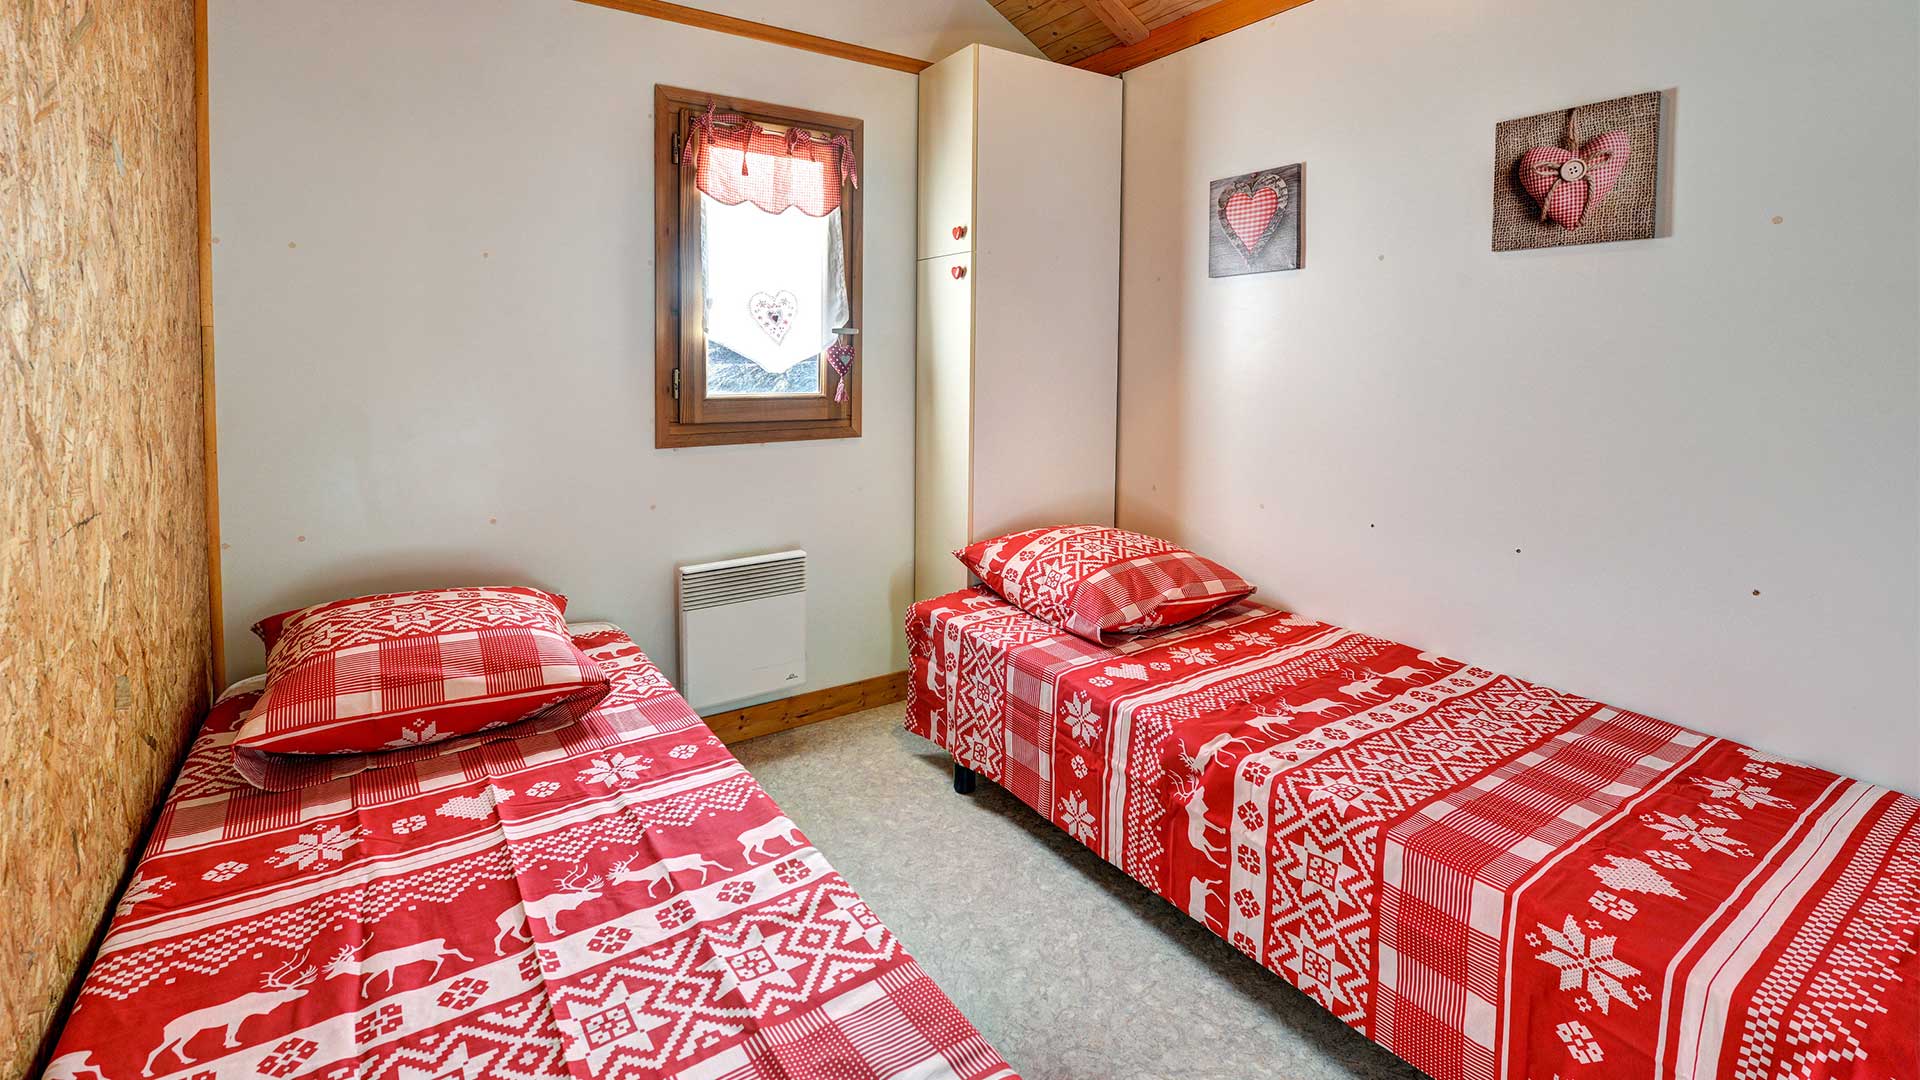 Grand Serre - Grande Gargouille : Chambre avec lits une place - Chalet 5 personnes en location à Briançon